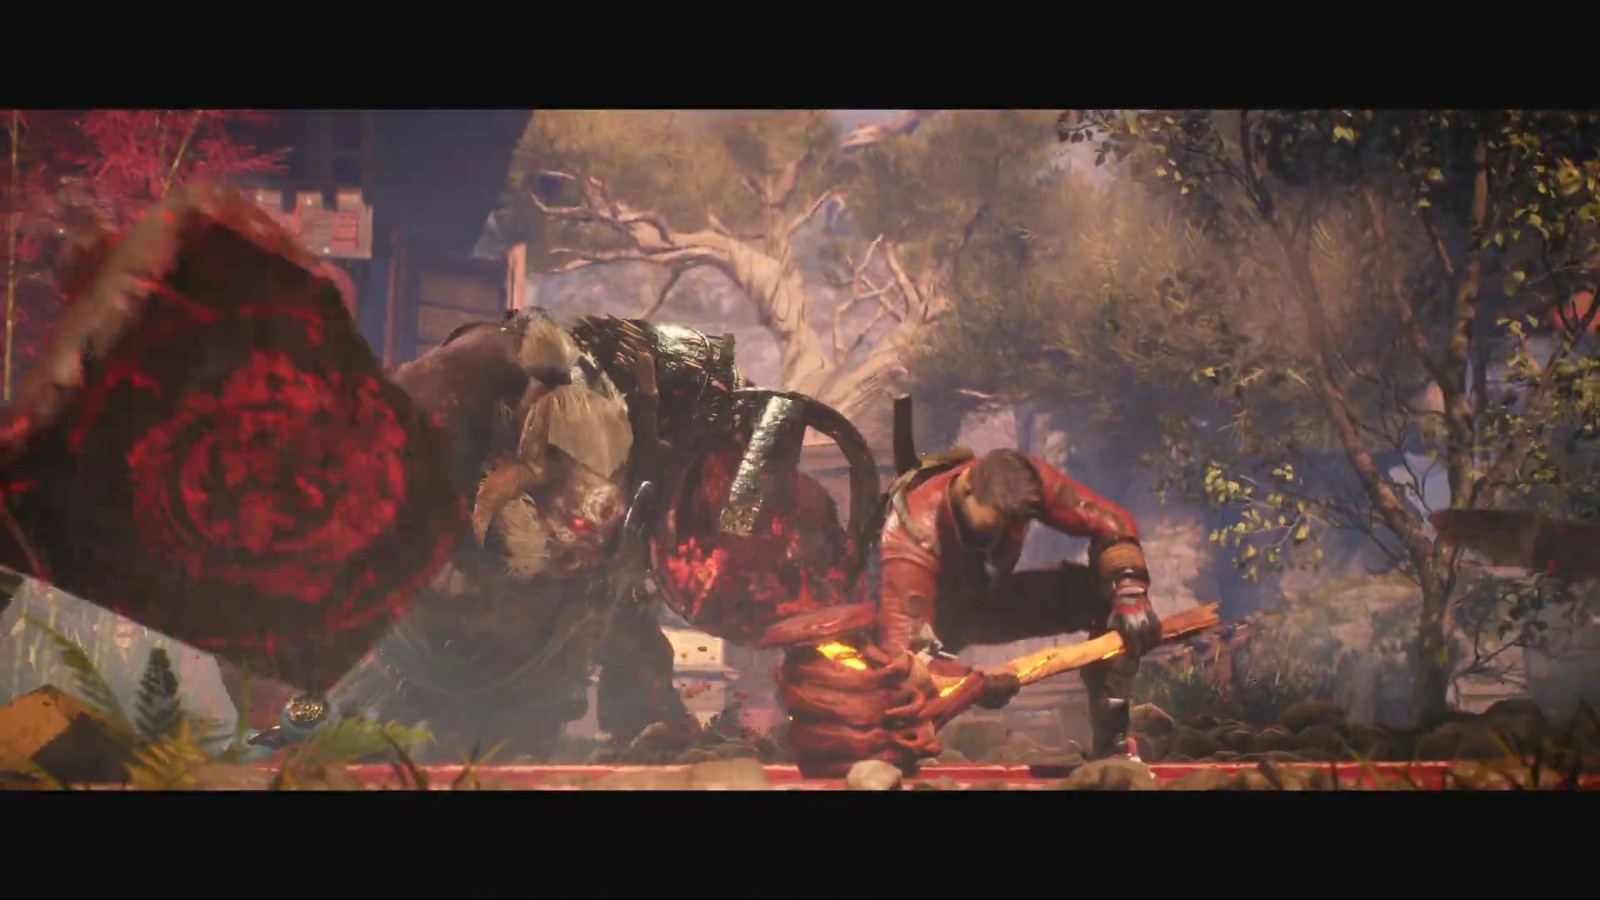 射击游戏《影子战士3》延期至2022年发售 为呈现更棒的游戏